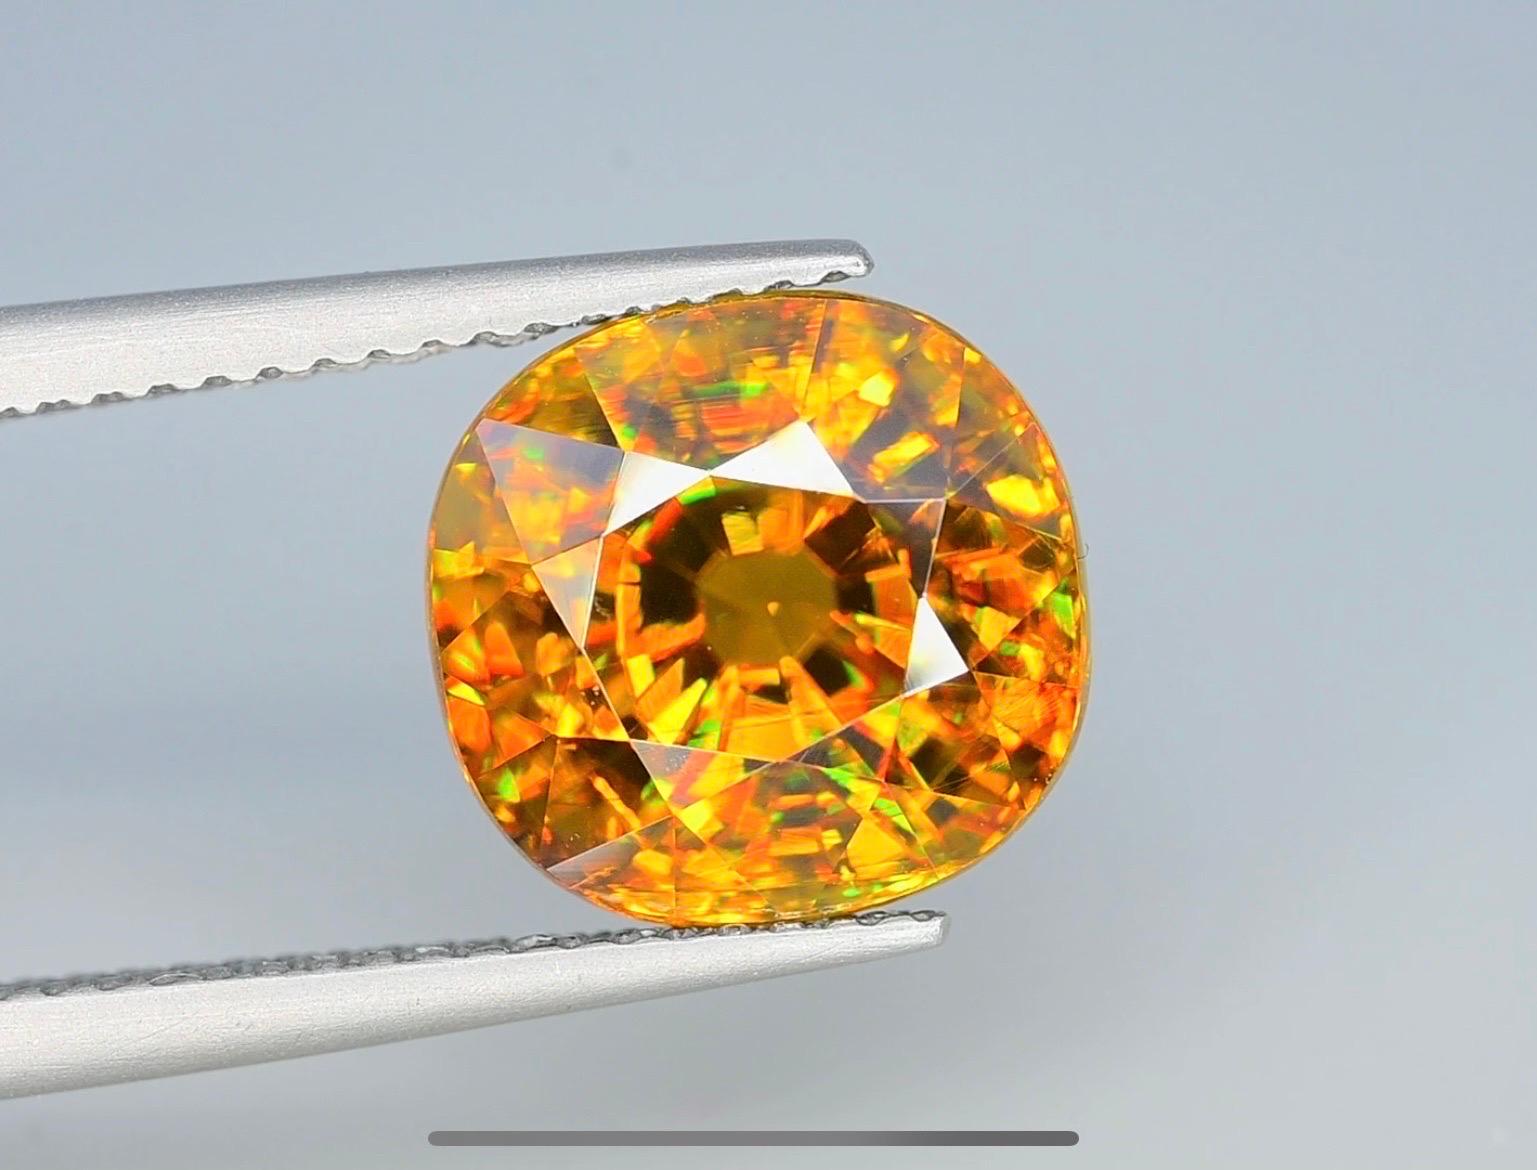 Voici une superbe titanite sphène VVS de 6,6 carats, qui rayonne d'une teinte dorée envoûtante. Soyez témoin de son feu à couper le souffle et de sa clarté remarquable. Une véritable incarnation de l'élégance et de la brillance. Ne manquez pas la